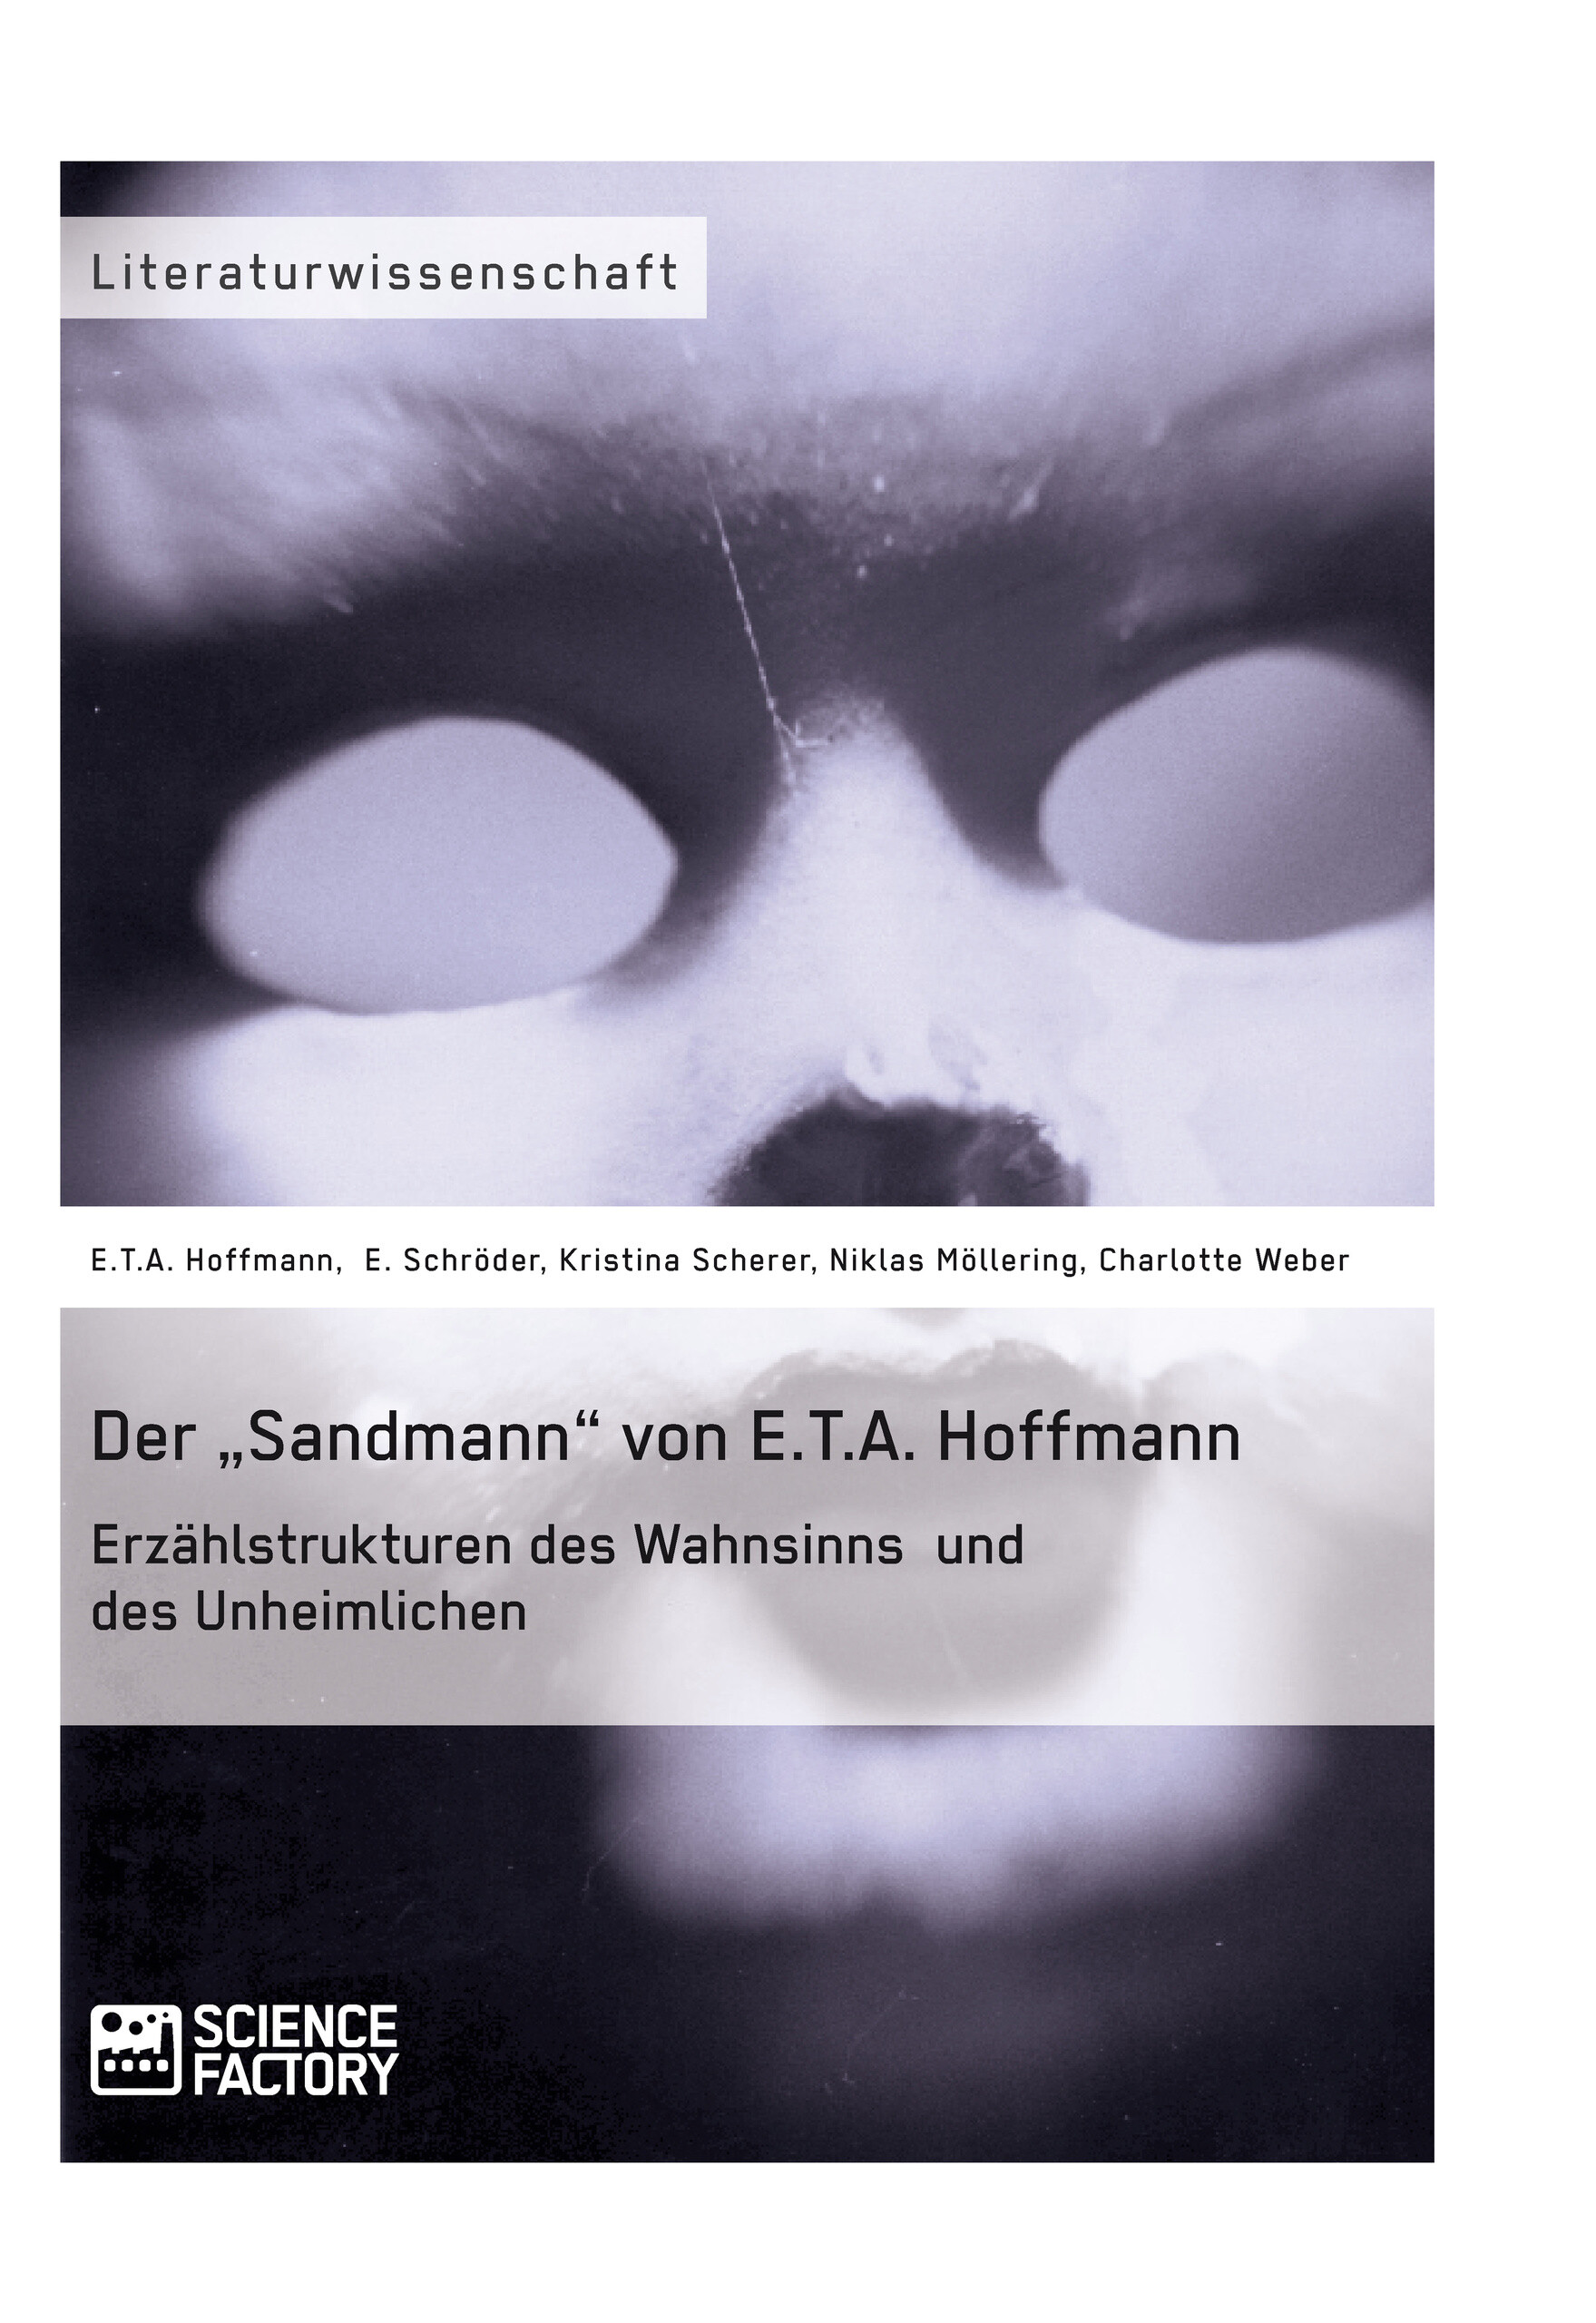 Der 'Sandmann' von E.T.A. Hoffmann. Erzählstrukturen des Wahnsinns und des Unheimlichen